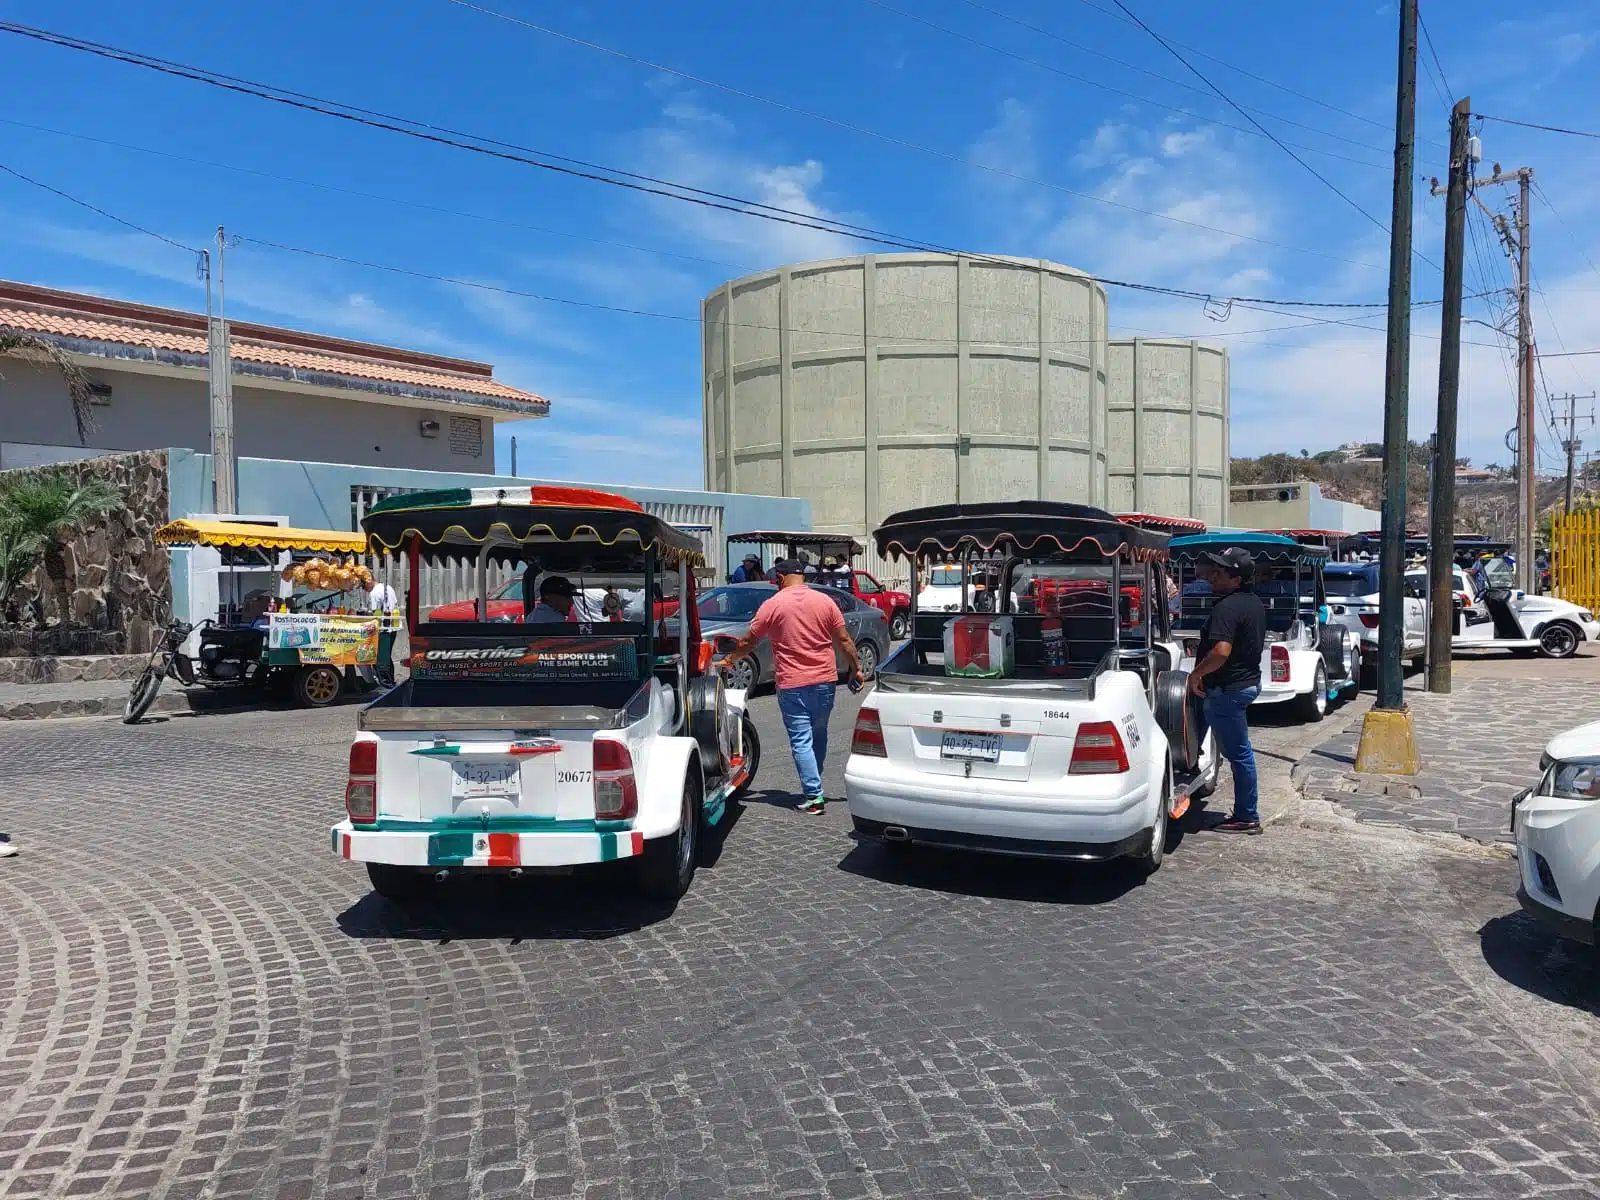 Servicio público, Pulmonias, Aurigas, Mazatlán